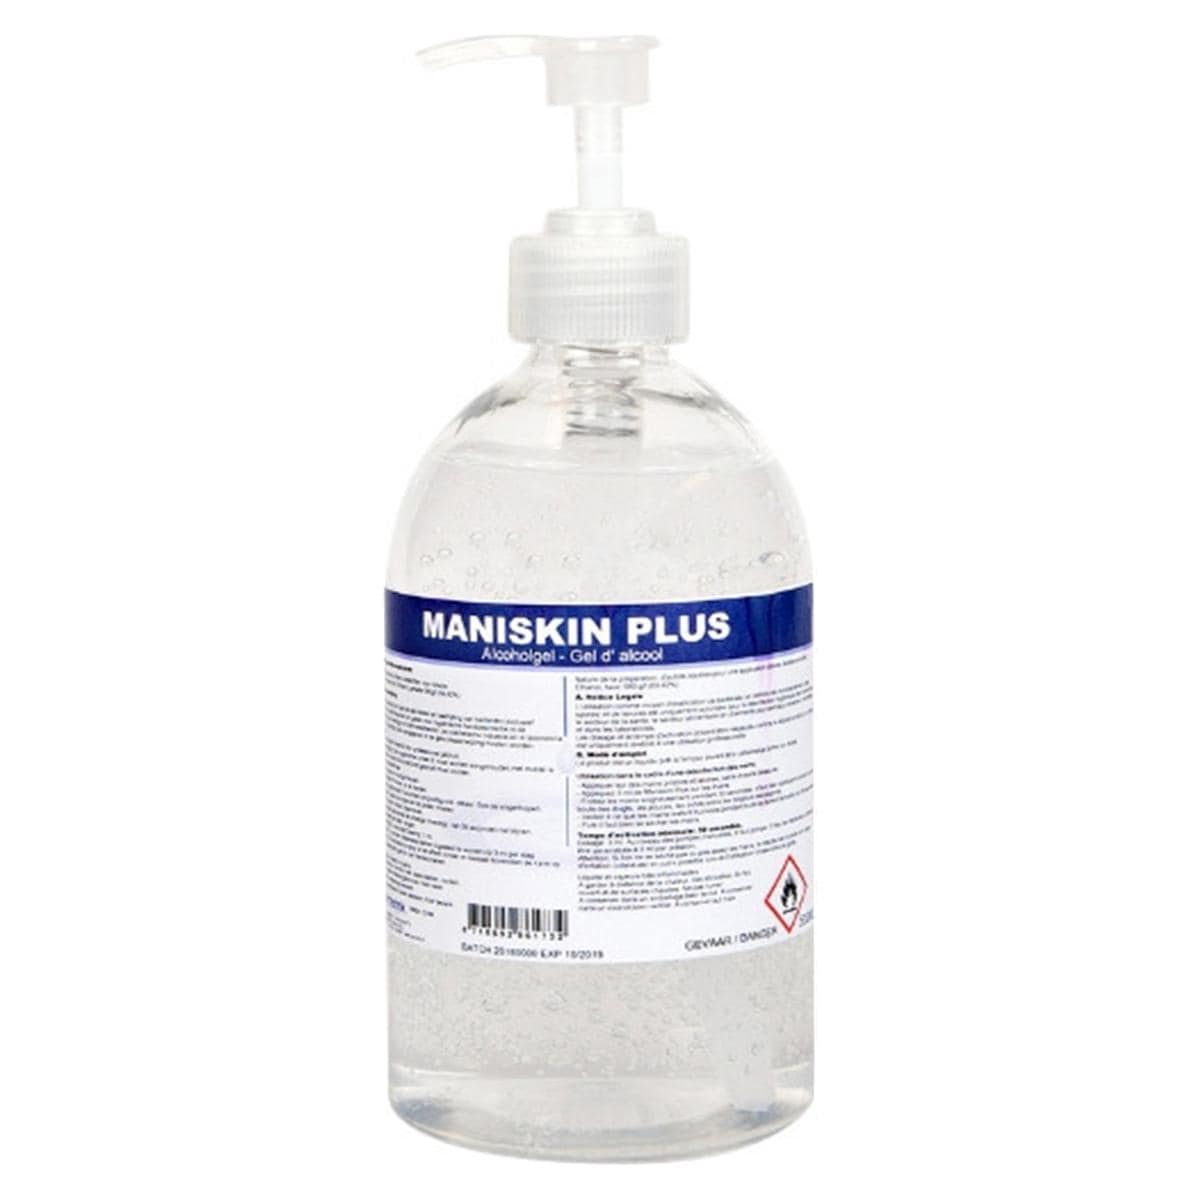 Maniskin Plus - Flacon, 250 ml